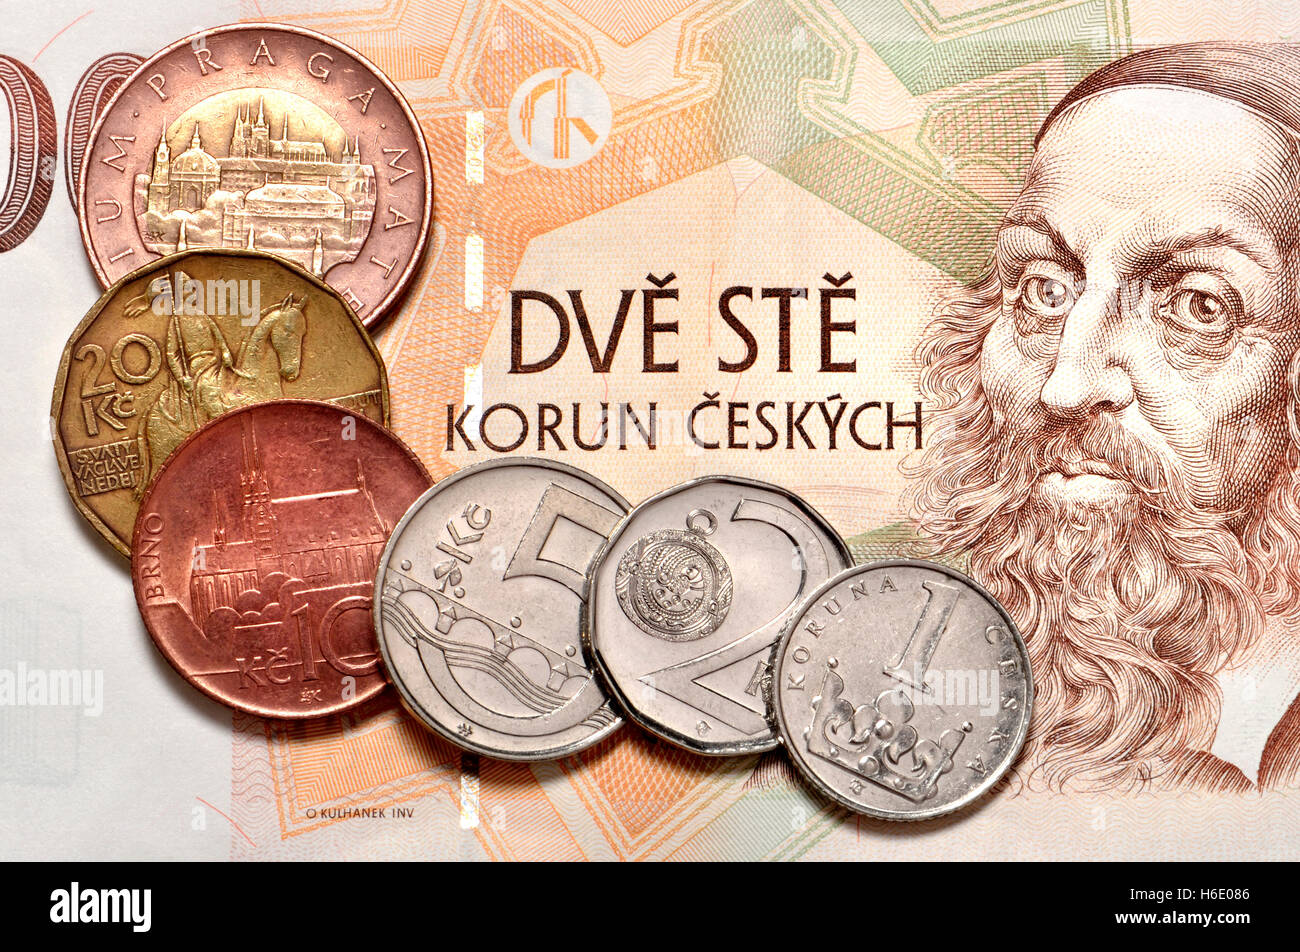 Corone ceche / koruny - valuta della Repubblica ceca. 200Kc nota e monete (50, 20, 10, 5, 2, 1) Foto Stock